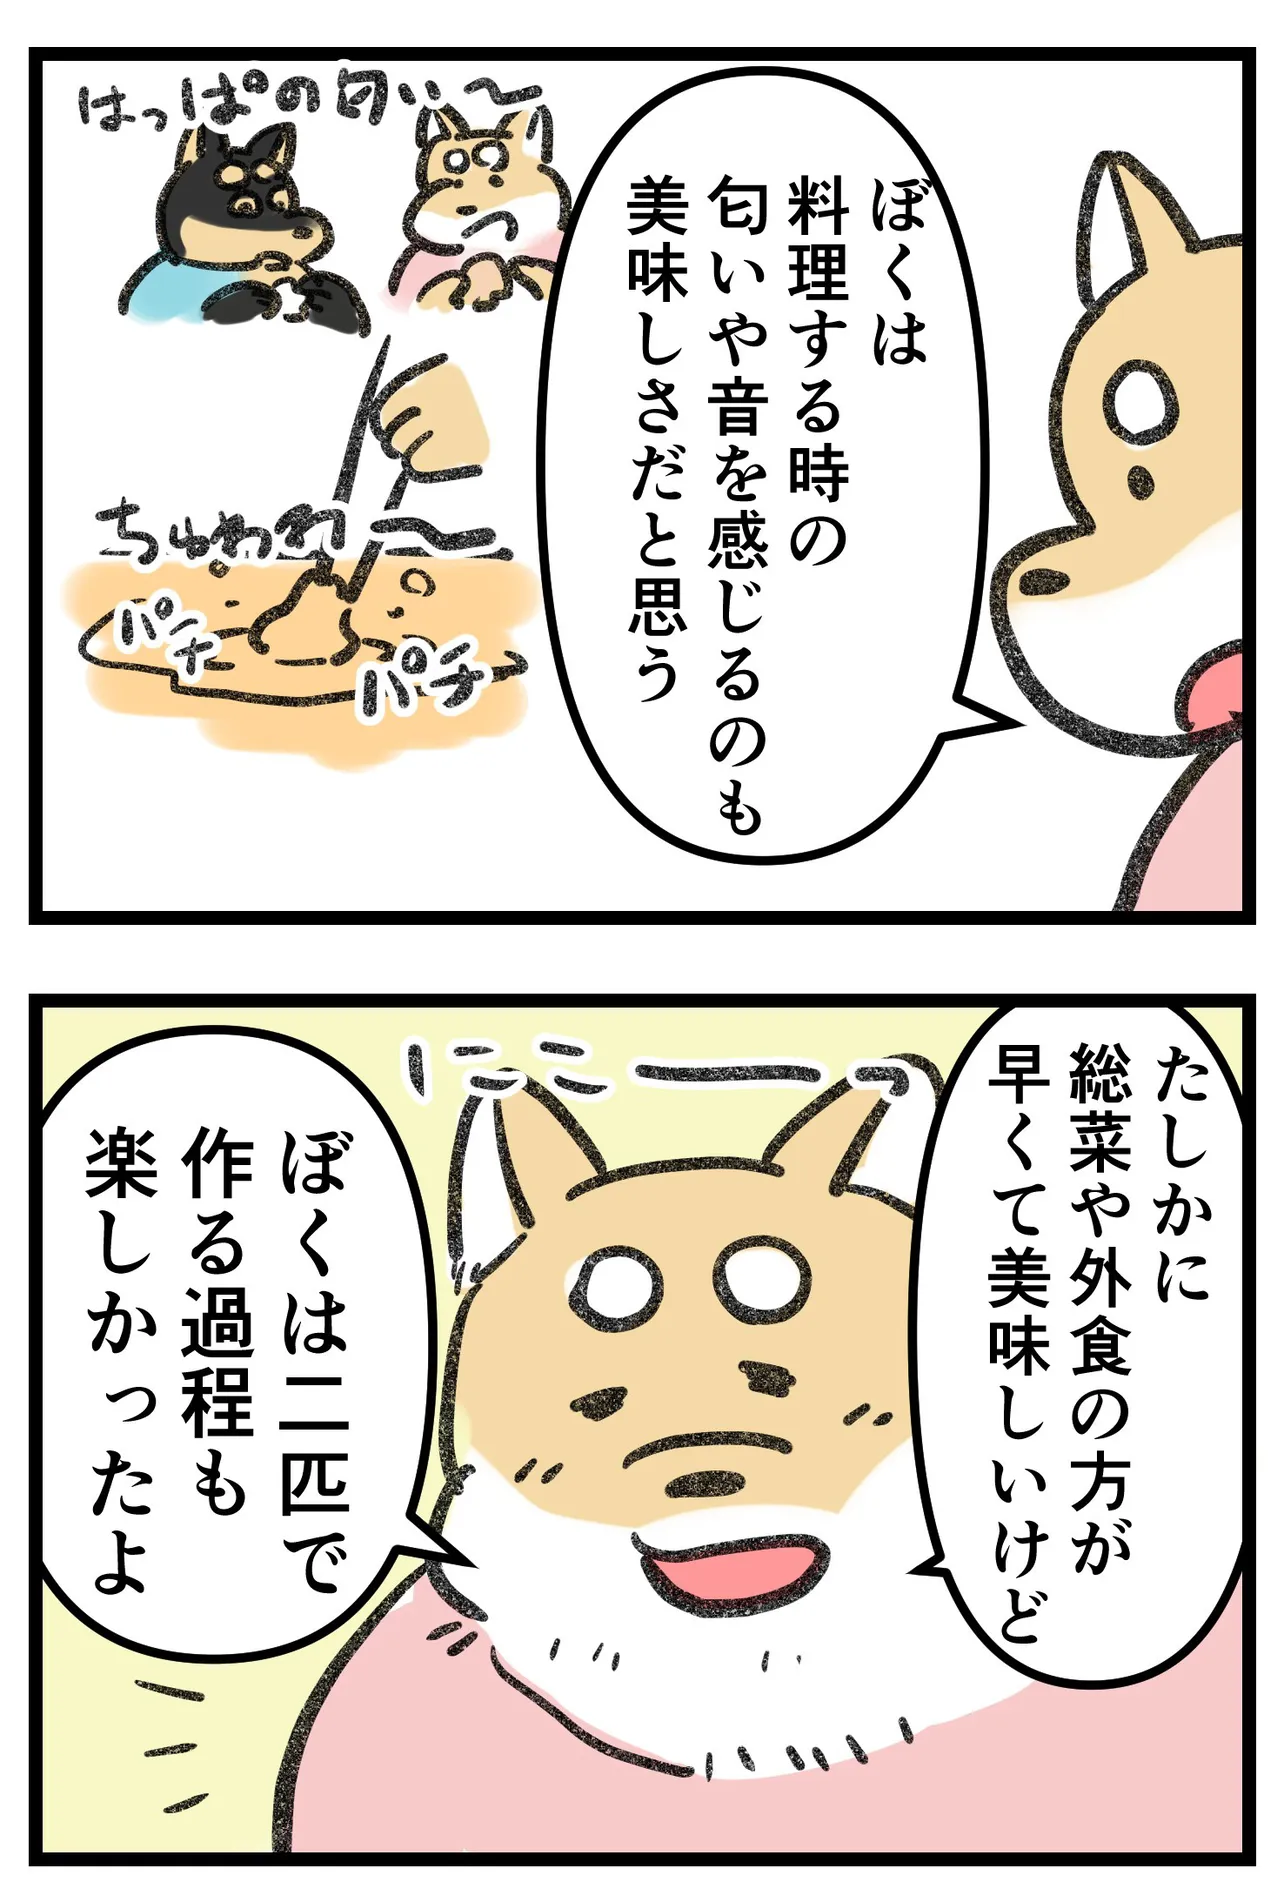 『柴犬二匹が山菜の天ぷらを作って食べる話』(15/16)